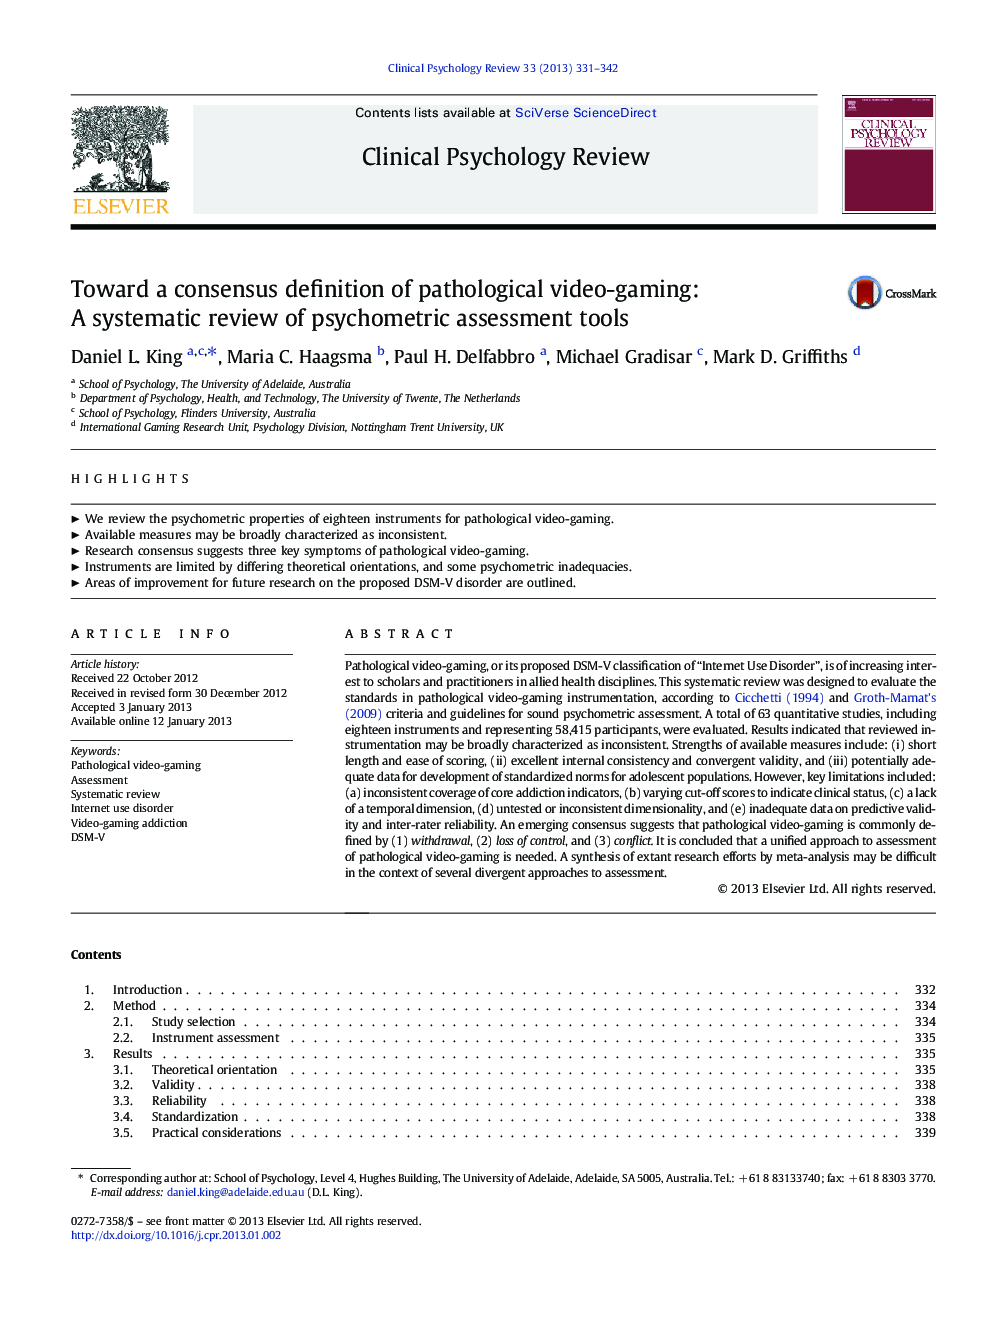 به یک تعریف همگانی از بازی های ویدئویی پاتولوژیک: بررسی سیستماتیک ابزارهای سنجش روان سنجی 